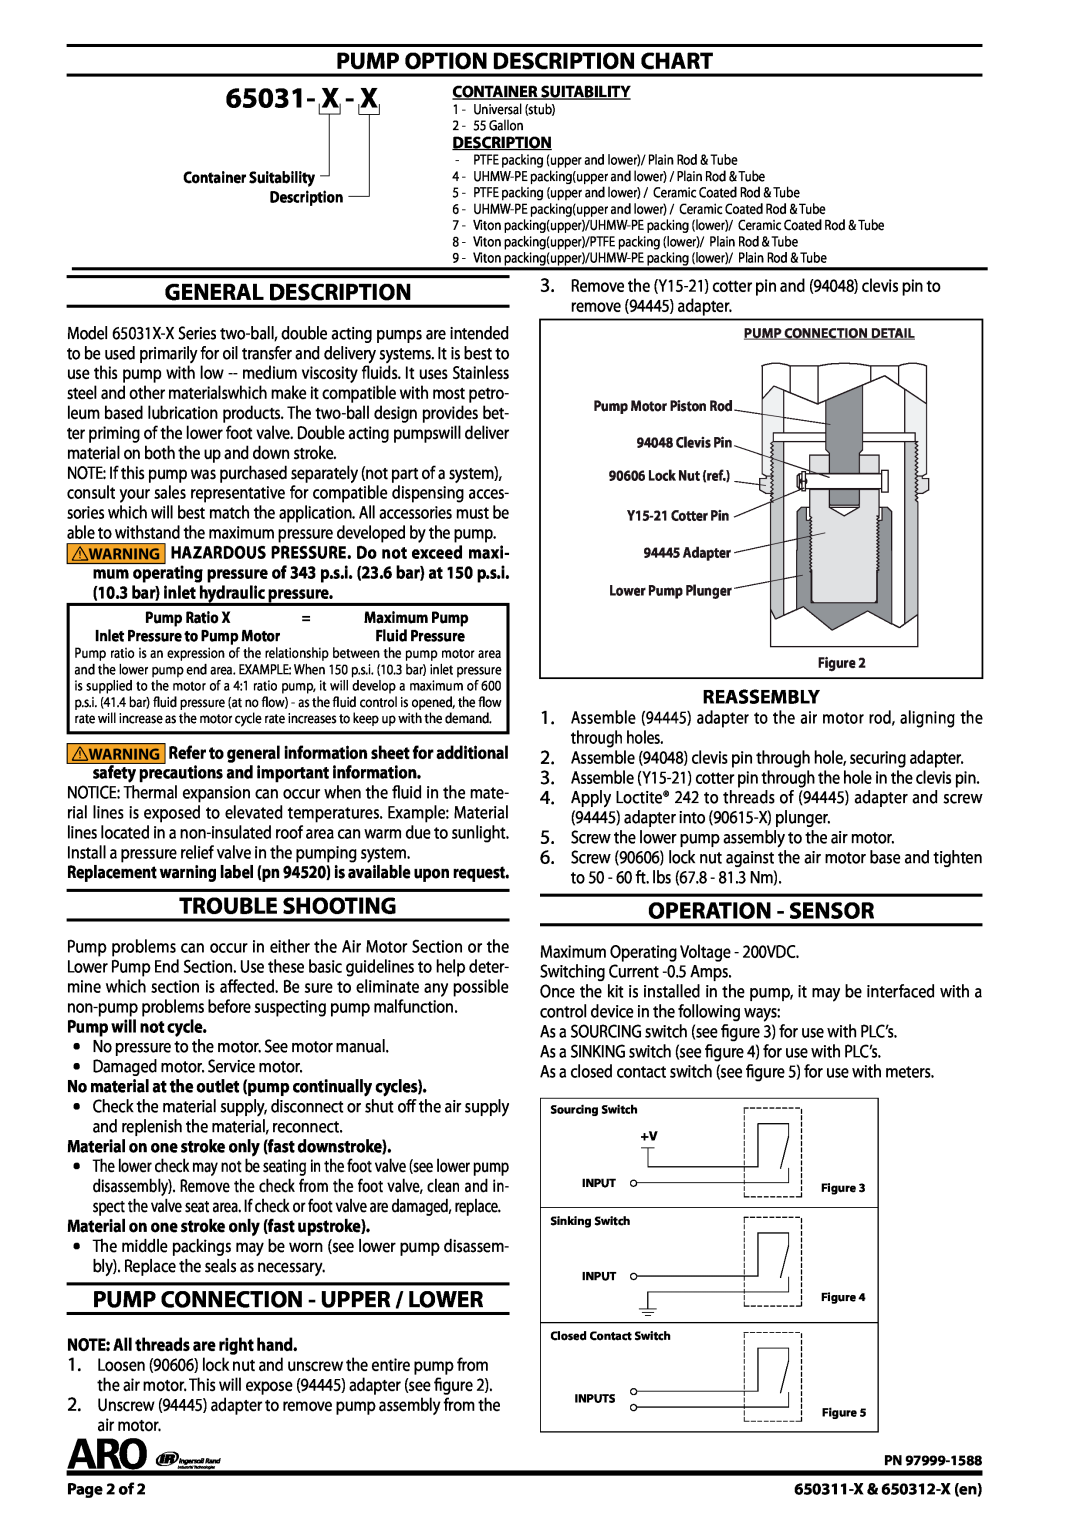 Ingersoll-Rand 650311-X & 650312-X 65031- X, Pump Option Description Chart, General Description, Trouble Shooting 